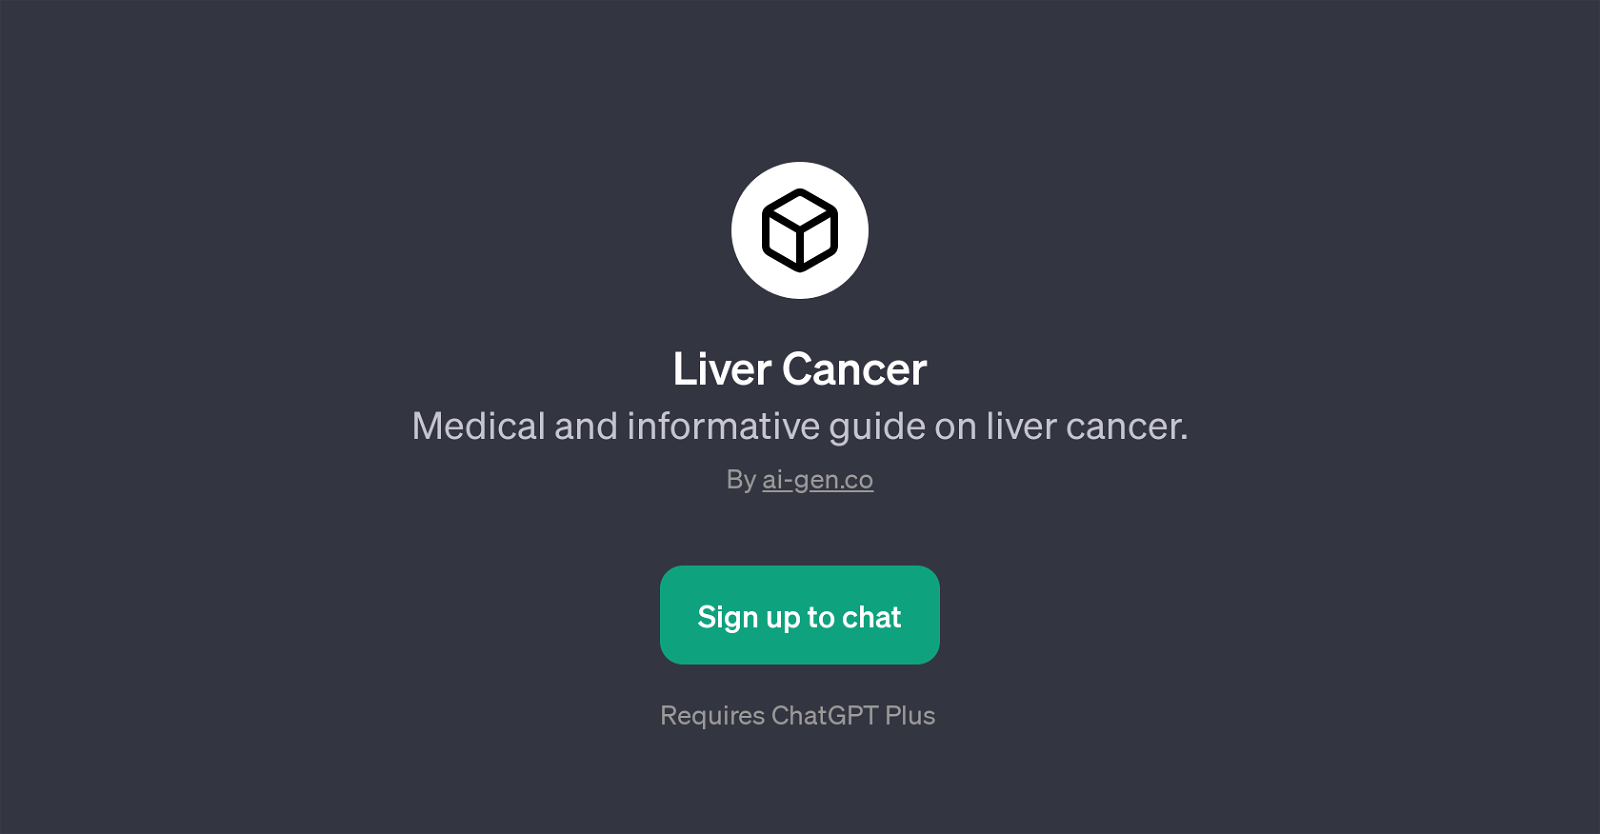 Liver Cancer website